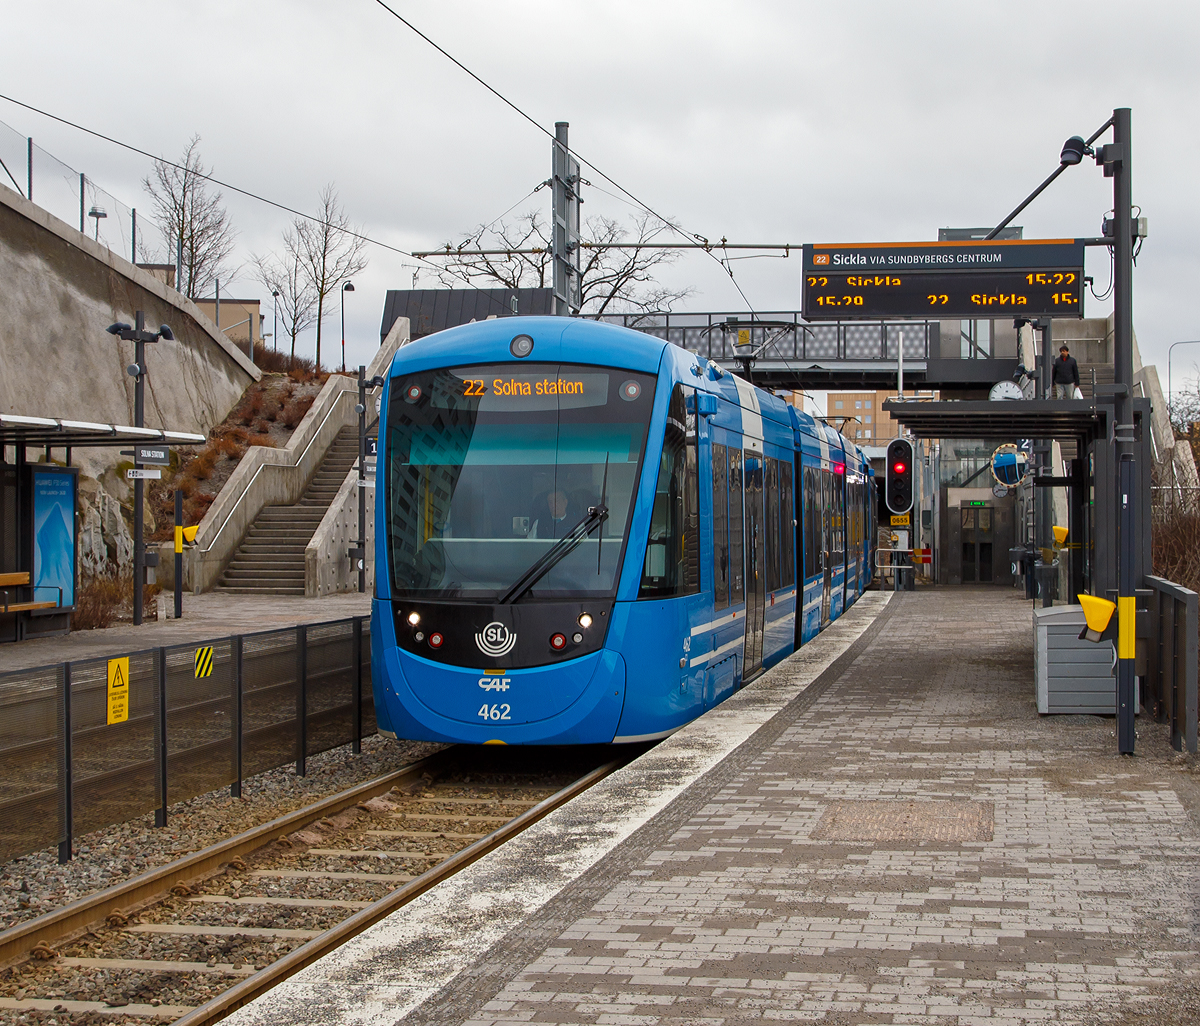 
Zwei gekuppelte dreiteilige CAF Urbos AXL der SL (AB Storstockholms Lokaltrafik), SL Baureihe A35, als Linie 22 erreichen am 21.03.2019 die Endhaltestellen Solna Station. Die Straenbahnlinie 22 befhrt die Querbahn (Tvrbanan) eine 19,8 km Straenbahnlinie in Stockholm (Solna Station – Sickla).

Urbos ist eine Familie von Straenbahnwagen der baskischen Firma Construcciones y Auxiliar de Ferrocarriles (CAF), mit Sitz in der spanischen Stadt Beasain in der Provinz Gipuzkoa. Der Urbos AXL wurde insbesondere fr lngere berlandstrecken entwickelt. Diese Einheiten erreichen eine Geschwindigkeit von 90 km/h. Die Wagenksten sind lnger als bei den Multigelenkwagen, sie laufen auf Drehgestellen mit durchgehenden Achsen. Die Endteile mit je einem Drehgestell sind, vergleichbar mit den Wagen des Typs Citylink, am bergangsende auf dem Mittelwagen mit zwei Drehgestellen aufgesattelt. Der Wagenboden ist bis auf die Bereiche ber den Enddrehgestellen stufenlos, jedoch ist er ber den brigen Drehgestellen etwas erhht. Die dreiteiligen Urbos AXL in Stockholm erhielten die Typenbezeichnung A35 und sind Zweirichtungswagen.

TECHNISCHE DATEN: 
Spurweite: 1.435 mm
Achsfolge: Bo'+ Bo' Bo'+Bo'
Fahrzeuglnge: 30.800 mm
Hhe: 3.633 mm
Breite: 2.650 mm
Drehgestellmittenabstnde:  9.600 / 5.000 / 9.600 mm
Achsabstand im Drehgesell: 1.850 mm
Niederfluranteil: 80 %
Raddurchmesser: 315 mm / 275 mm (neu/verschlissen)
Eigengewicht: 34.860 kg
Antrieb: 4 Drehstrom-Asynchronmotoren mit je 135 kW 
Leistung: 540 kW
Hchstgeschwindigkeit: 90 km/h
Maximale Beschleunigung: 1,2 m/s
Verzgerung: Betriebsbremse 1,3 m/s / Not 2,8 m/s
Max. befahrbare Steigung: 70 ‰
Sitzpltze: 72
Stehpltze (4 Personen/m):  203
Fahrdrahtnennspannung: 750 V= (DC)
